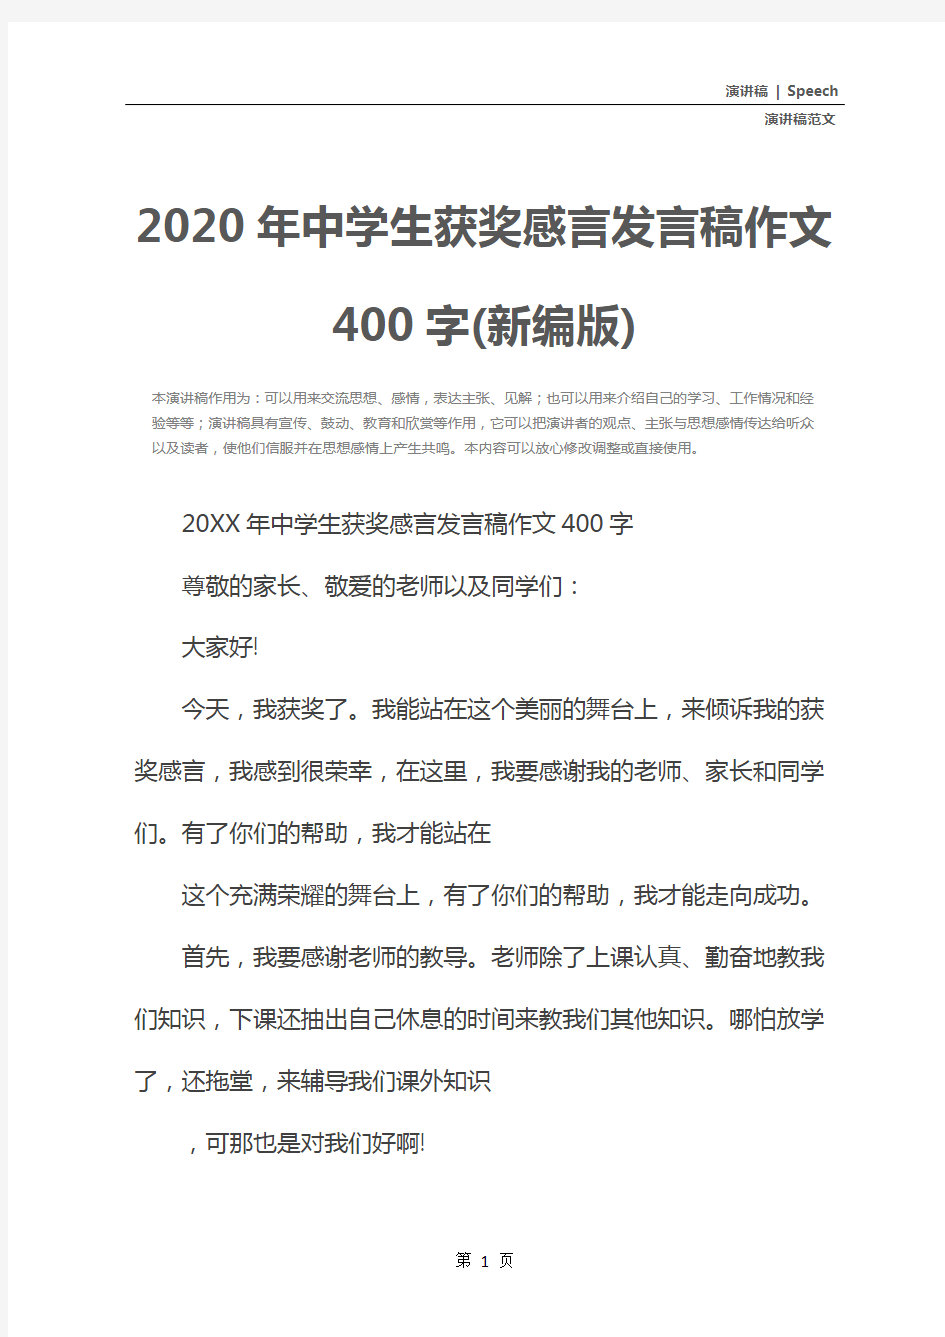 2020年中学生获奖感言发言稿作文400字(新编版)